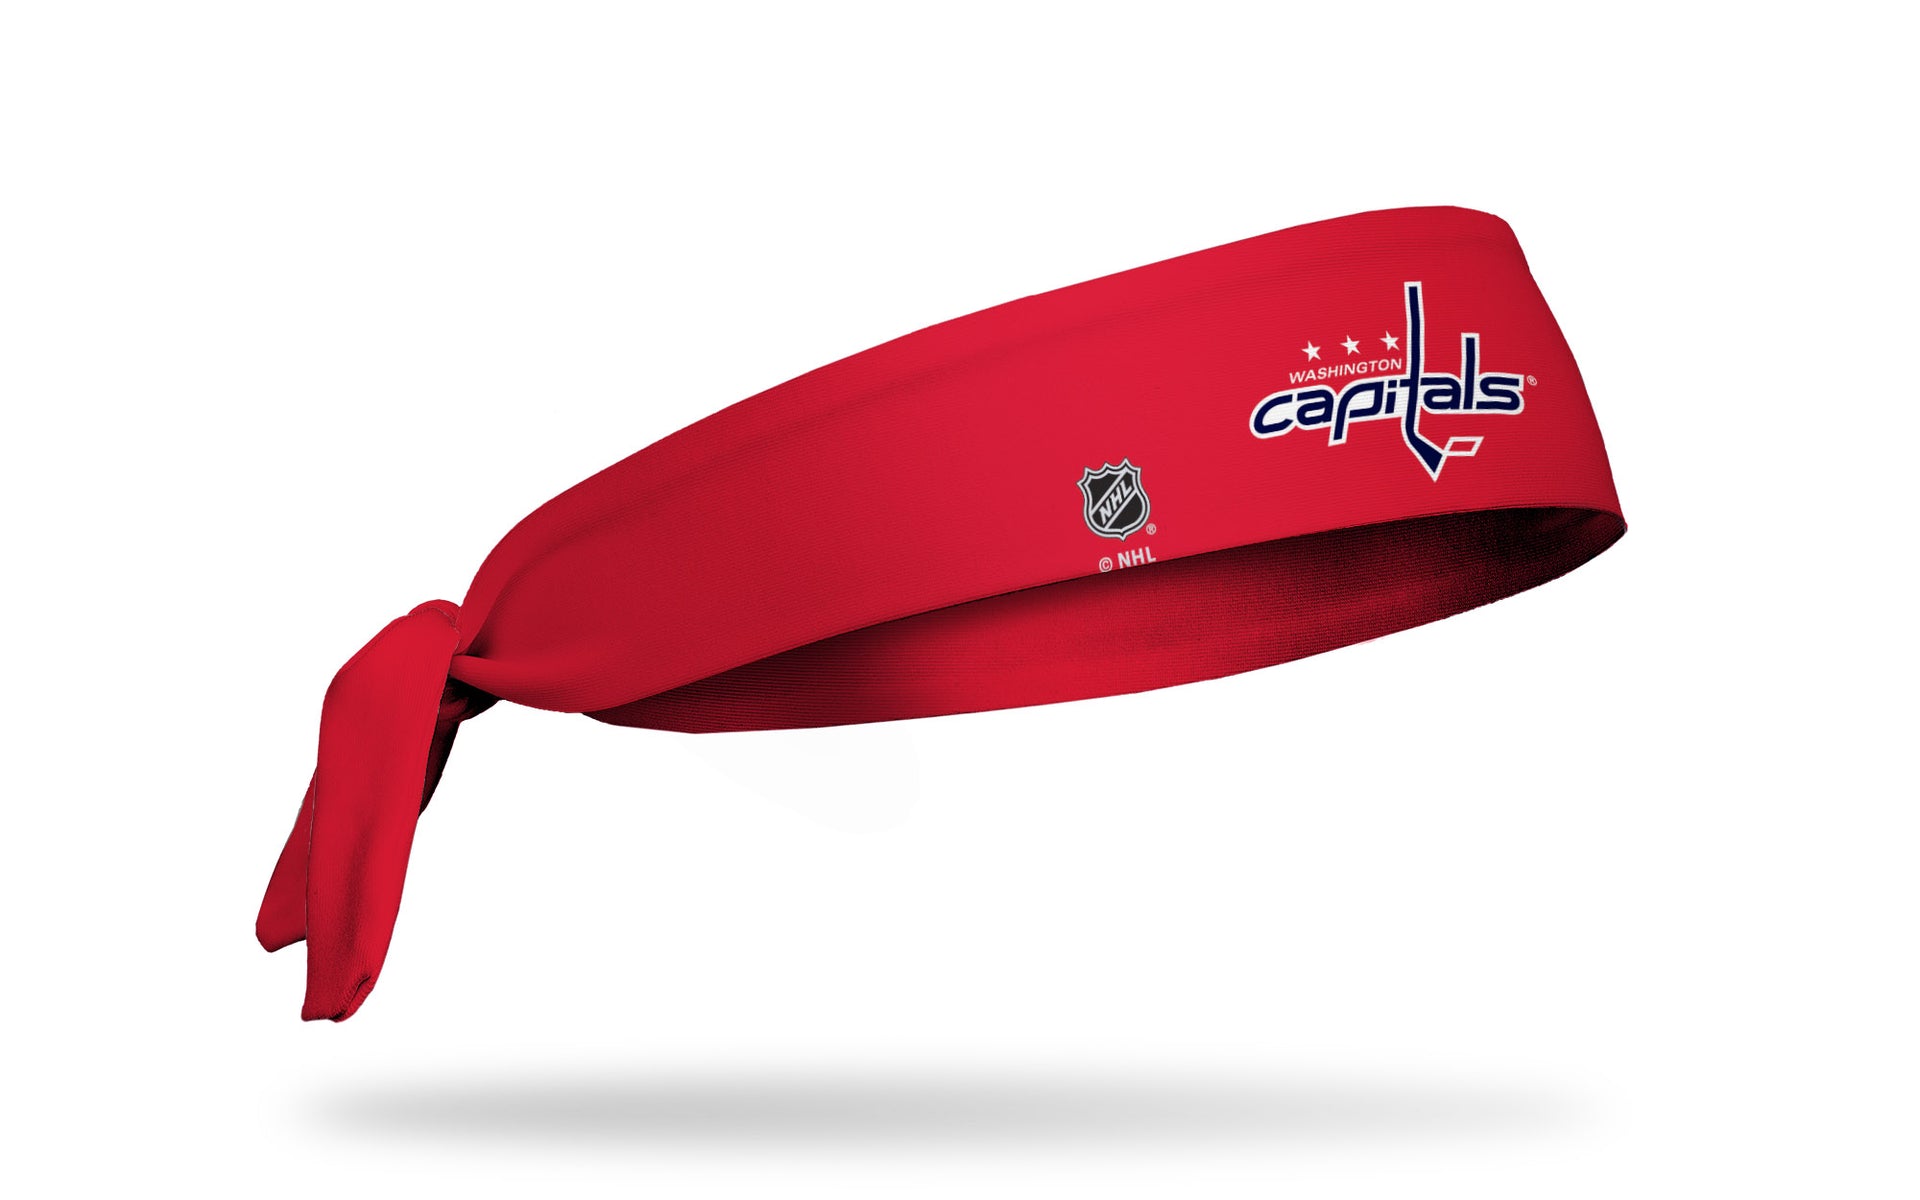 Washington Capitals: Logo Red Tie Headband - View 2